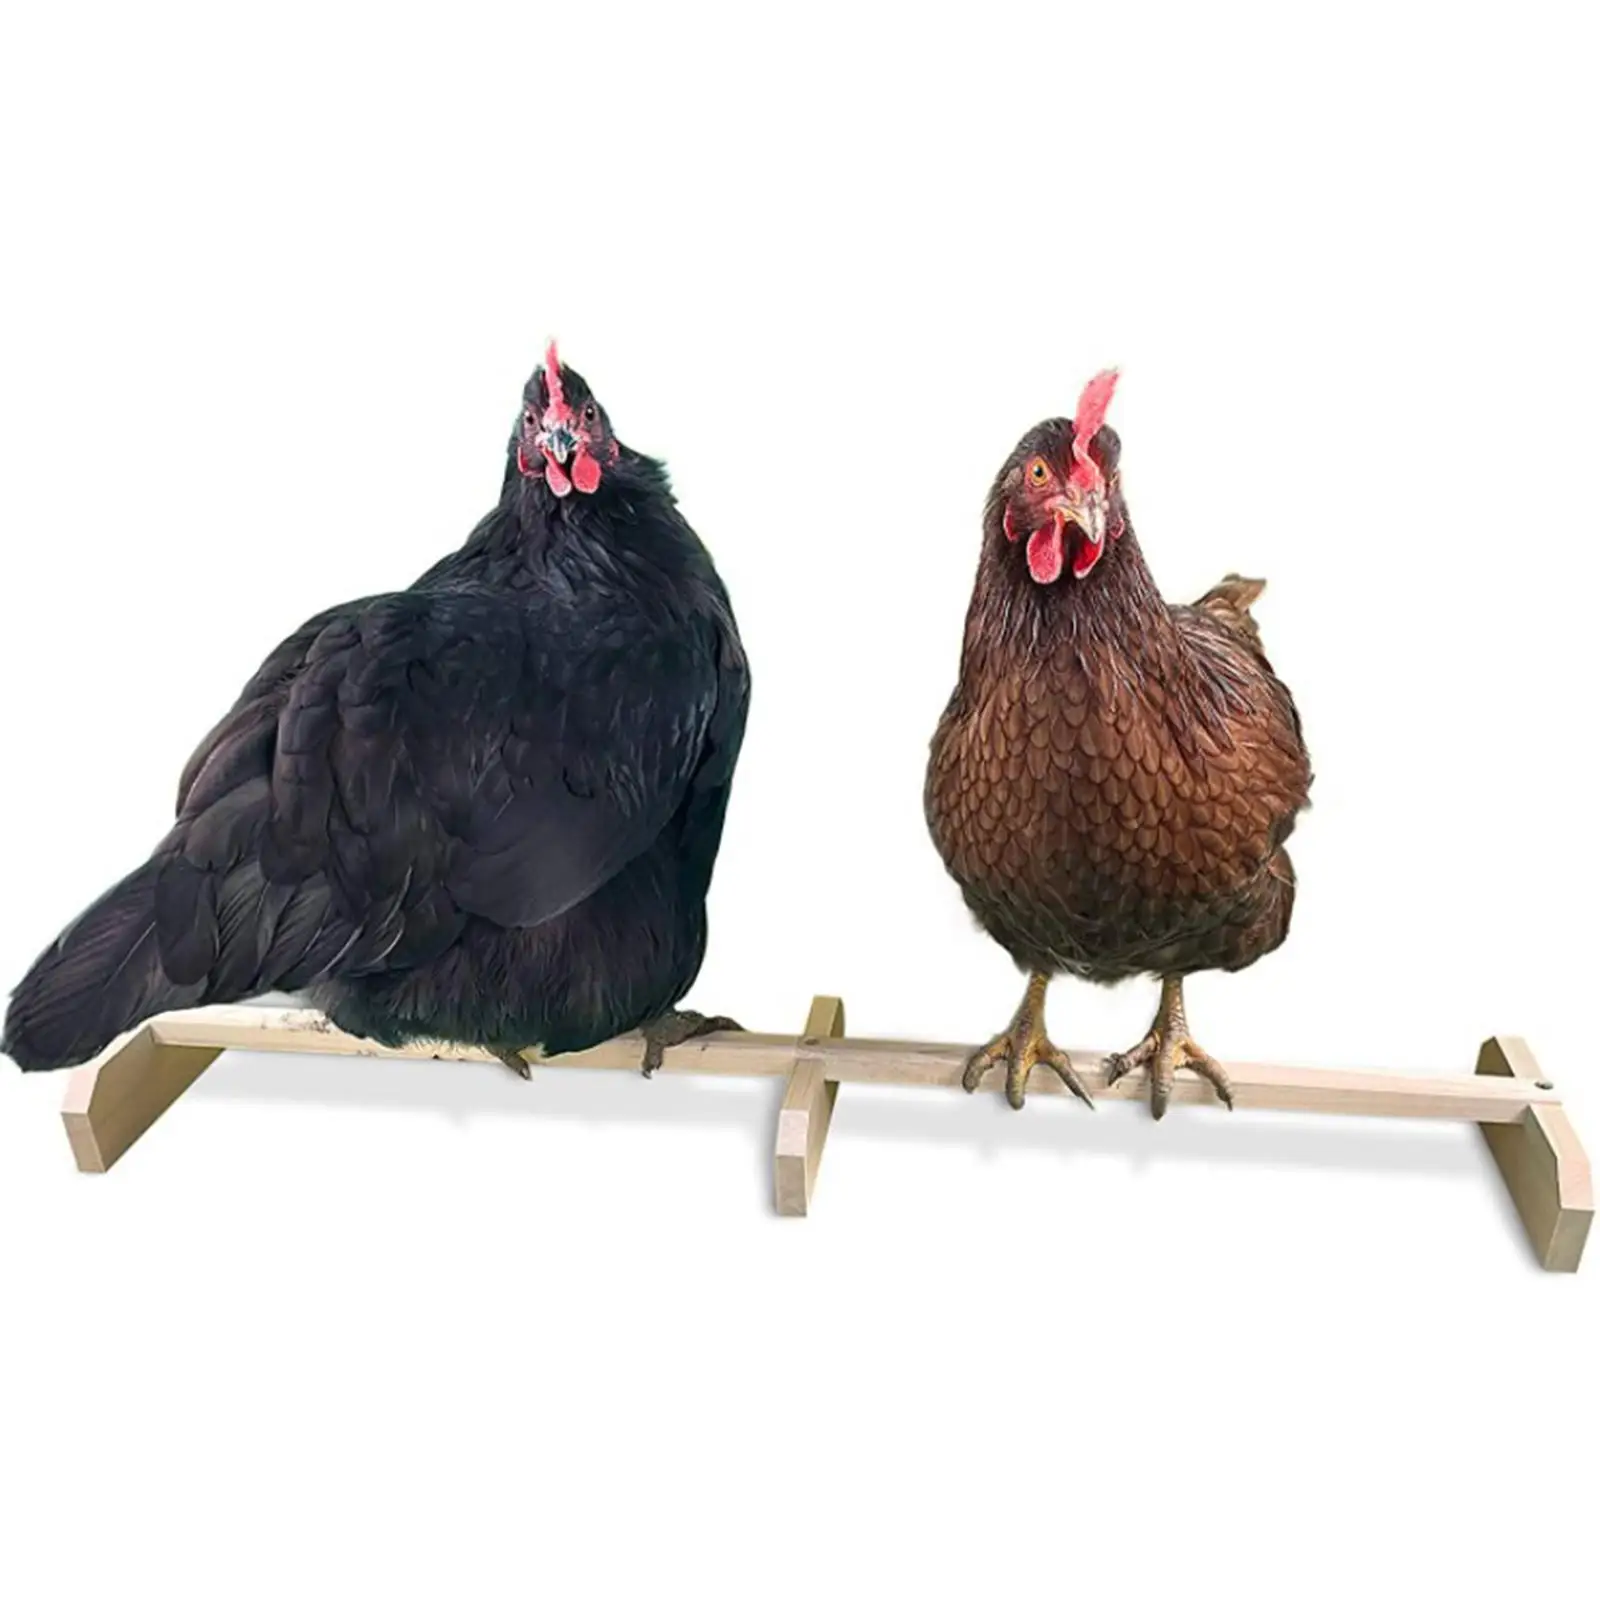 Wooden Chicken Perch Chicken Roost Accessories Chicken Wood Stand Bird Perch Stand Chick Stand for Baby Chicks Large Bird Macaw